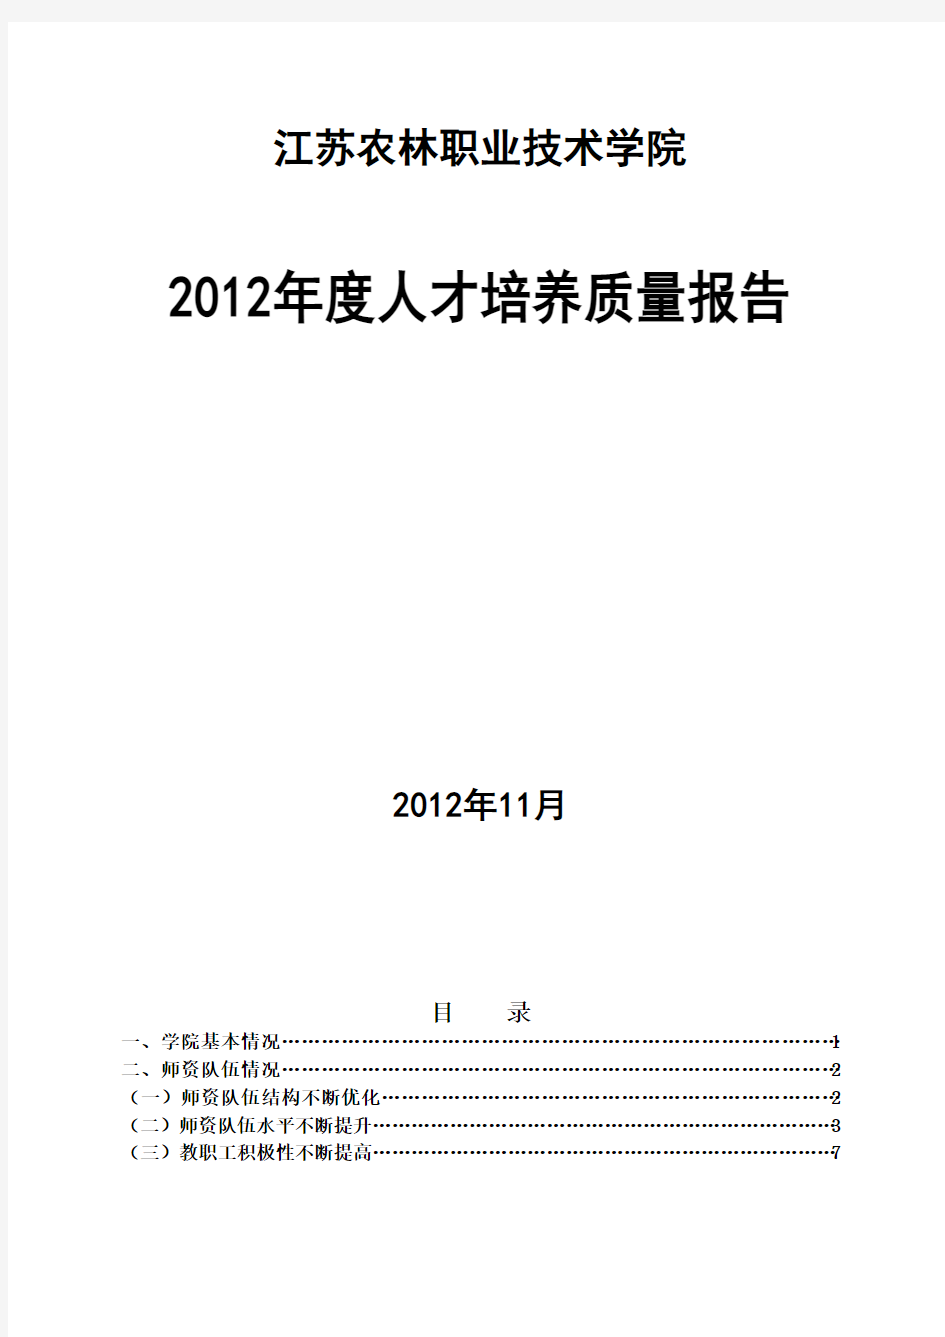 江苏农林职业技术学院人才培养2012年度报告